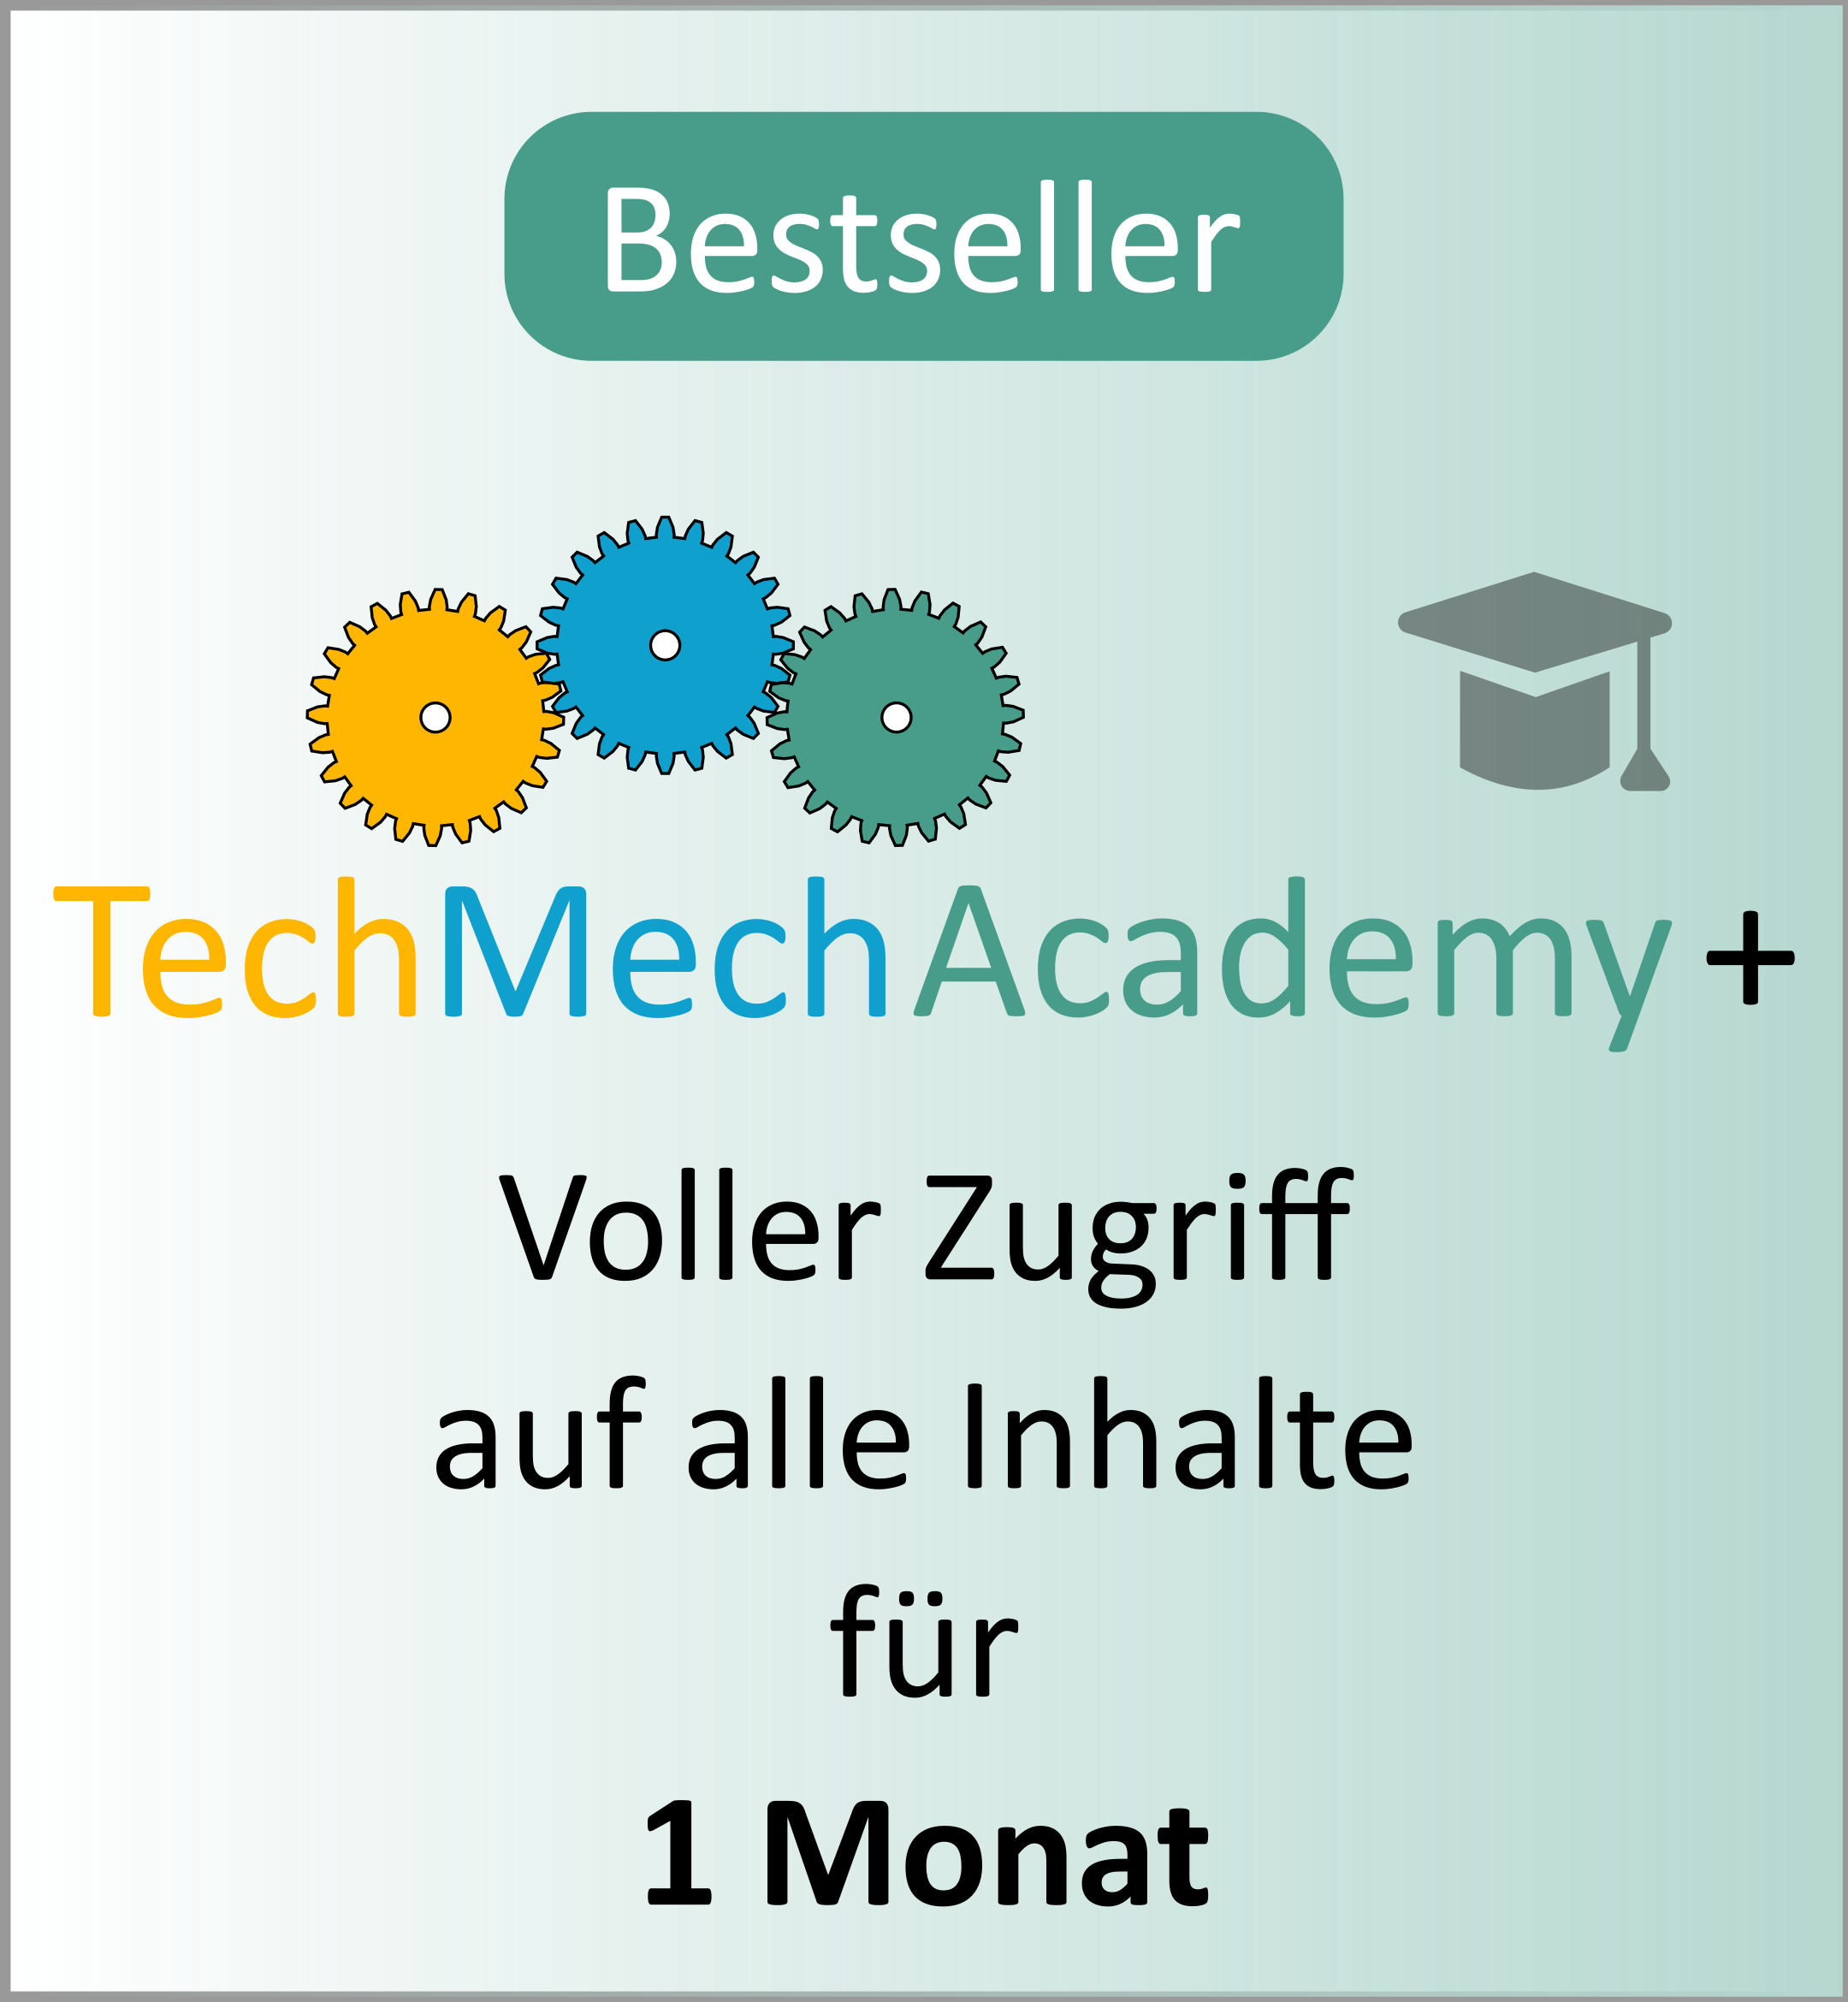 Bestseller: TechMechAcademy+. Voller Zugriff auf alle Inhalte für einen Monat.